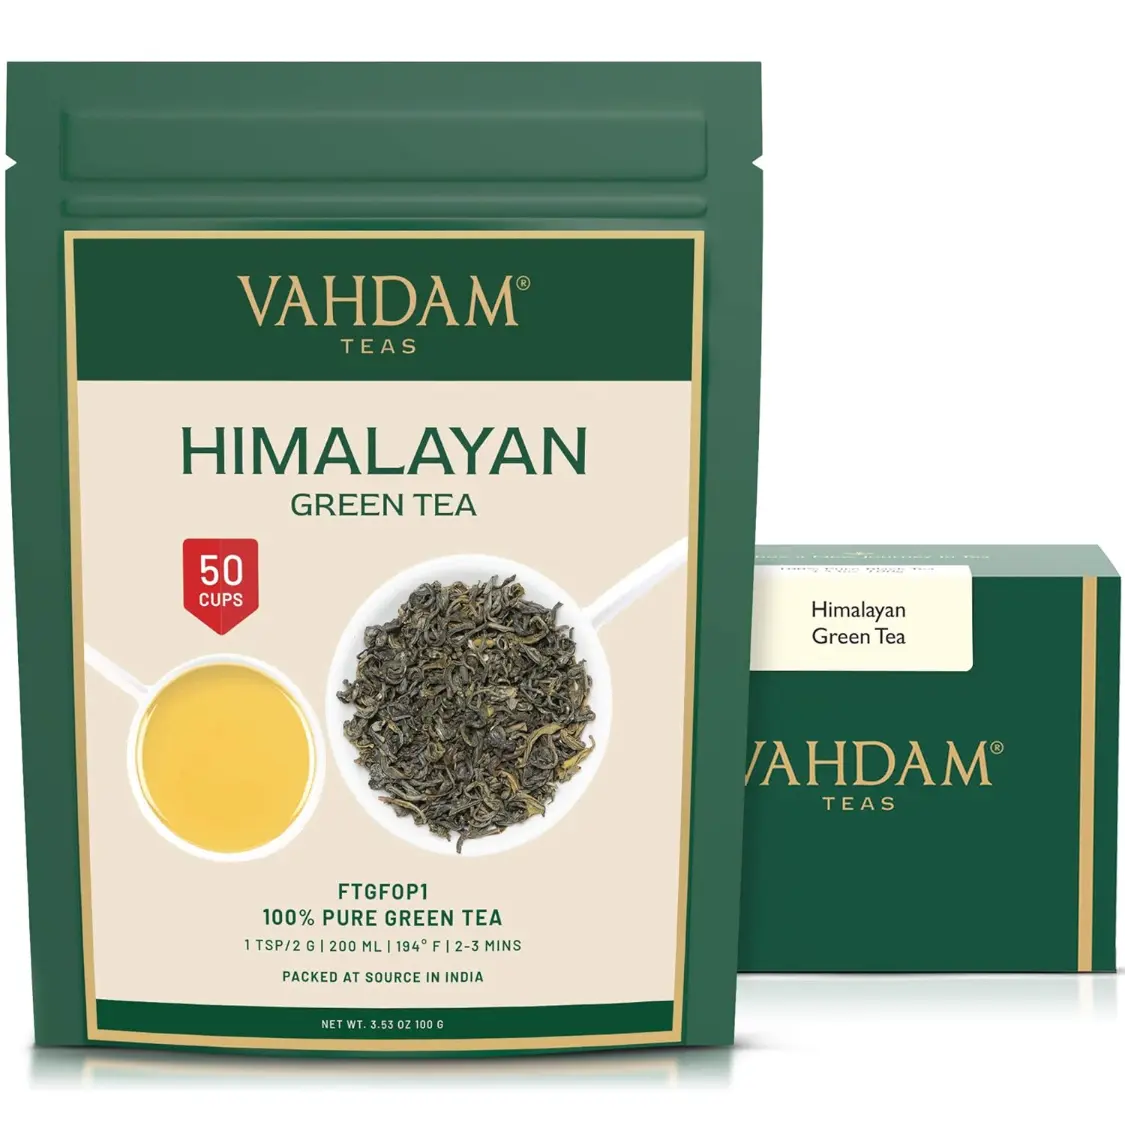 VAHDAM Himalayan Green Tea